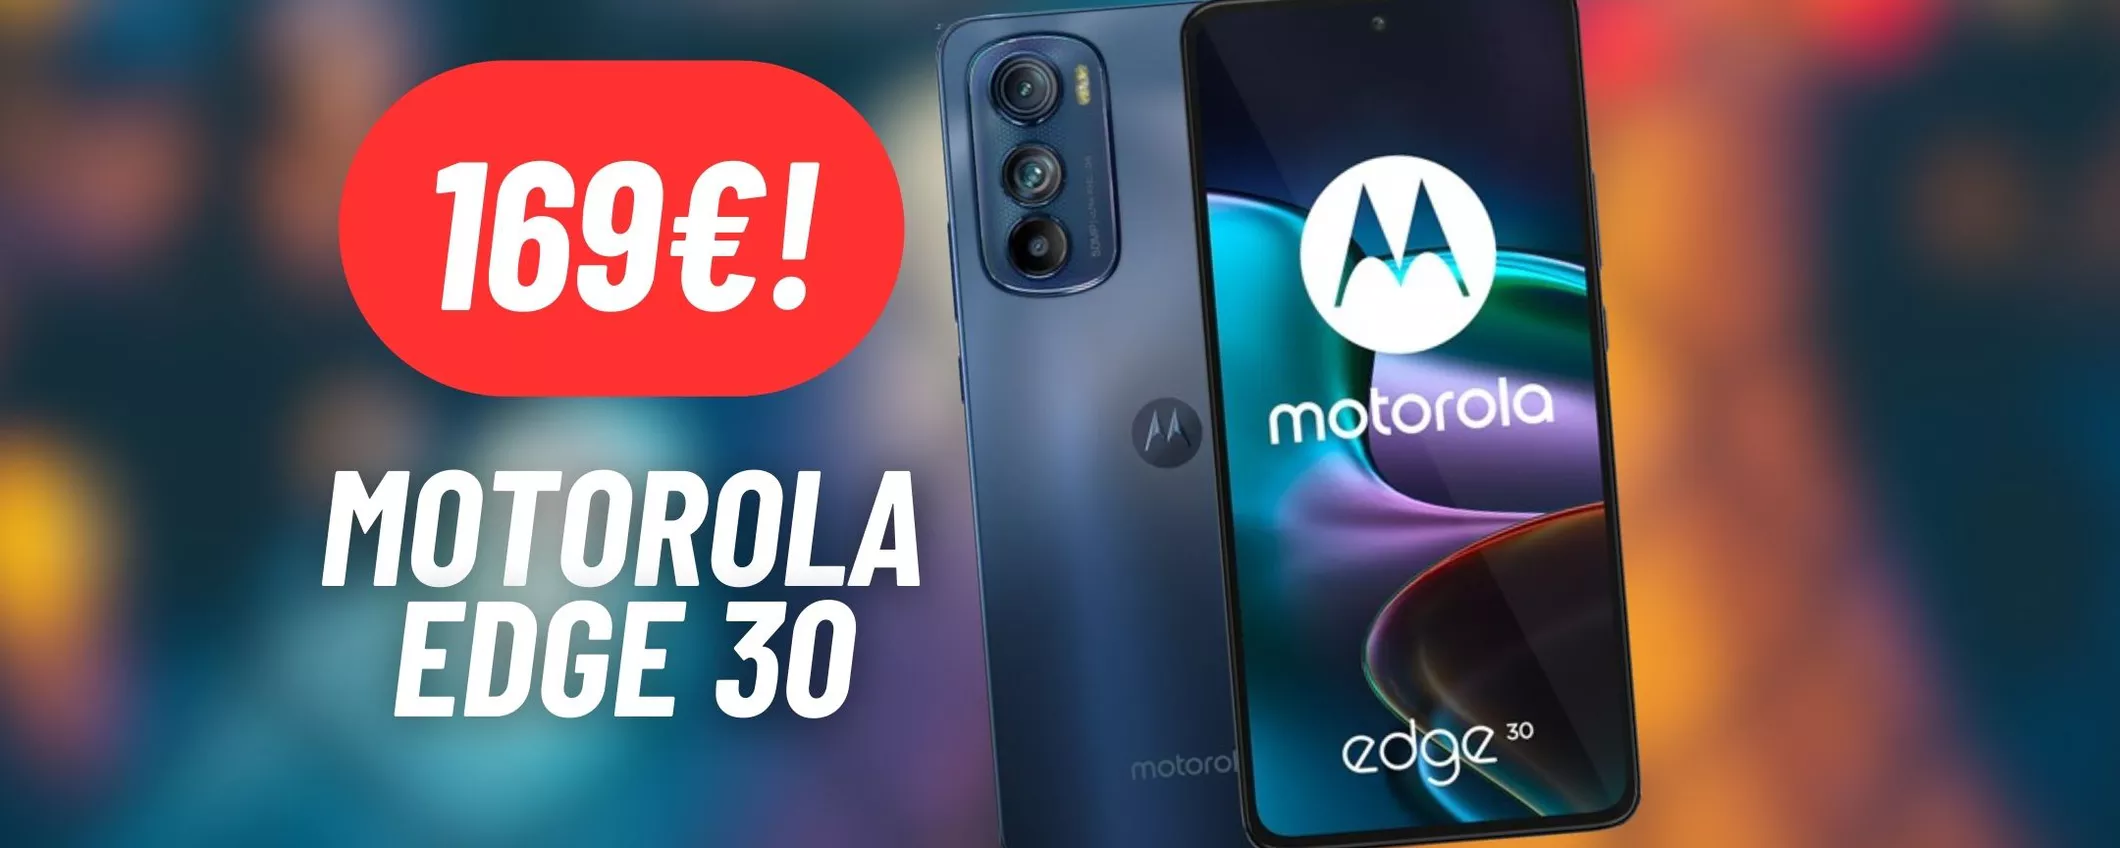 DISINTEGRATO IL PREZZO del Motorola Edge 30 con la doppia promo eBay: risparmia 130€